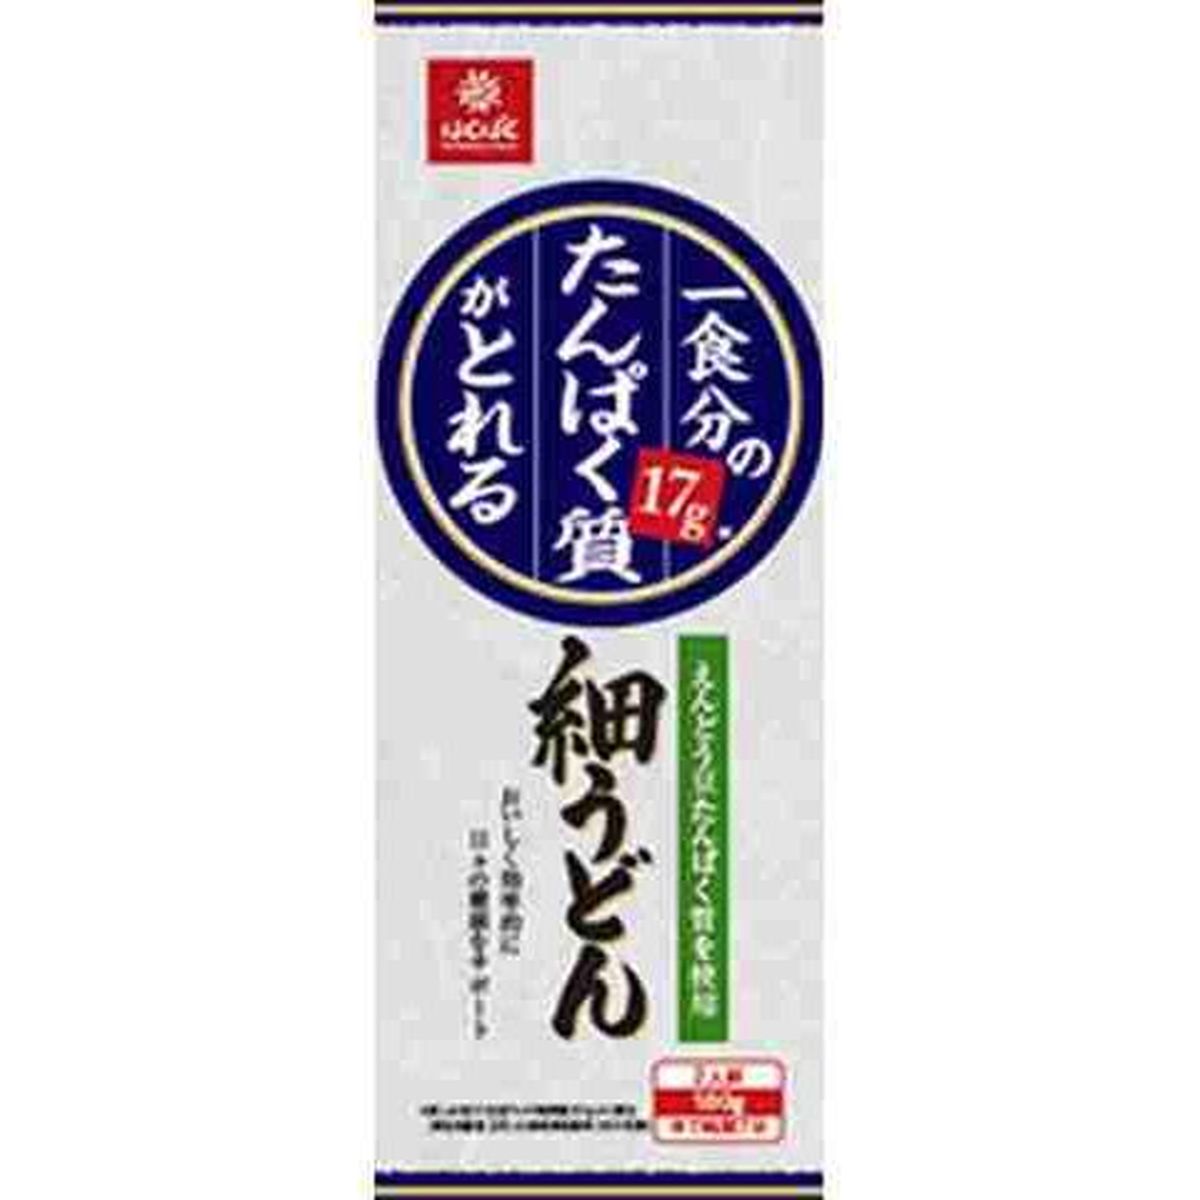 【20個入リ】ハクバク1食分タンパク質ガトレル細ウドン 180g